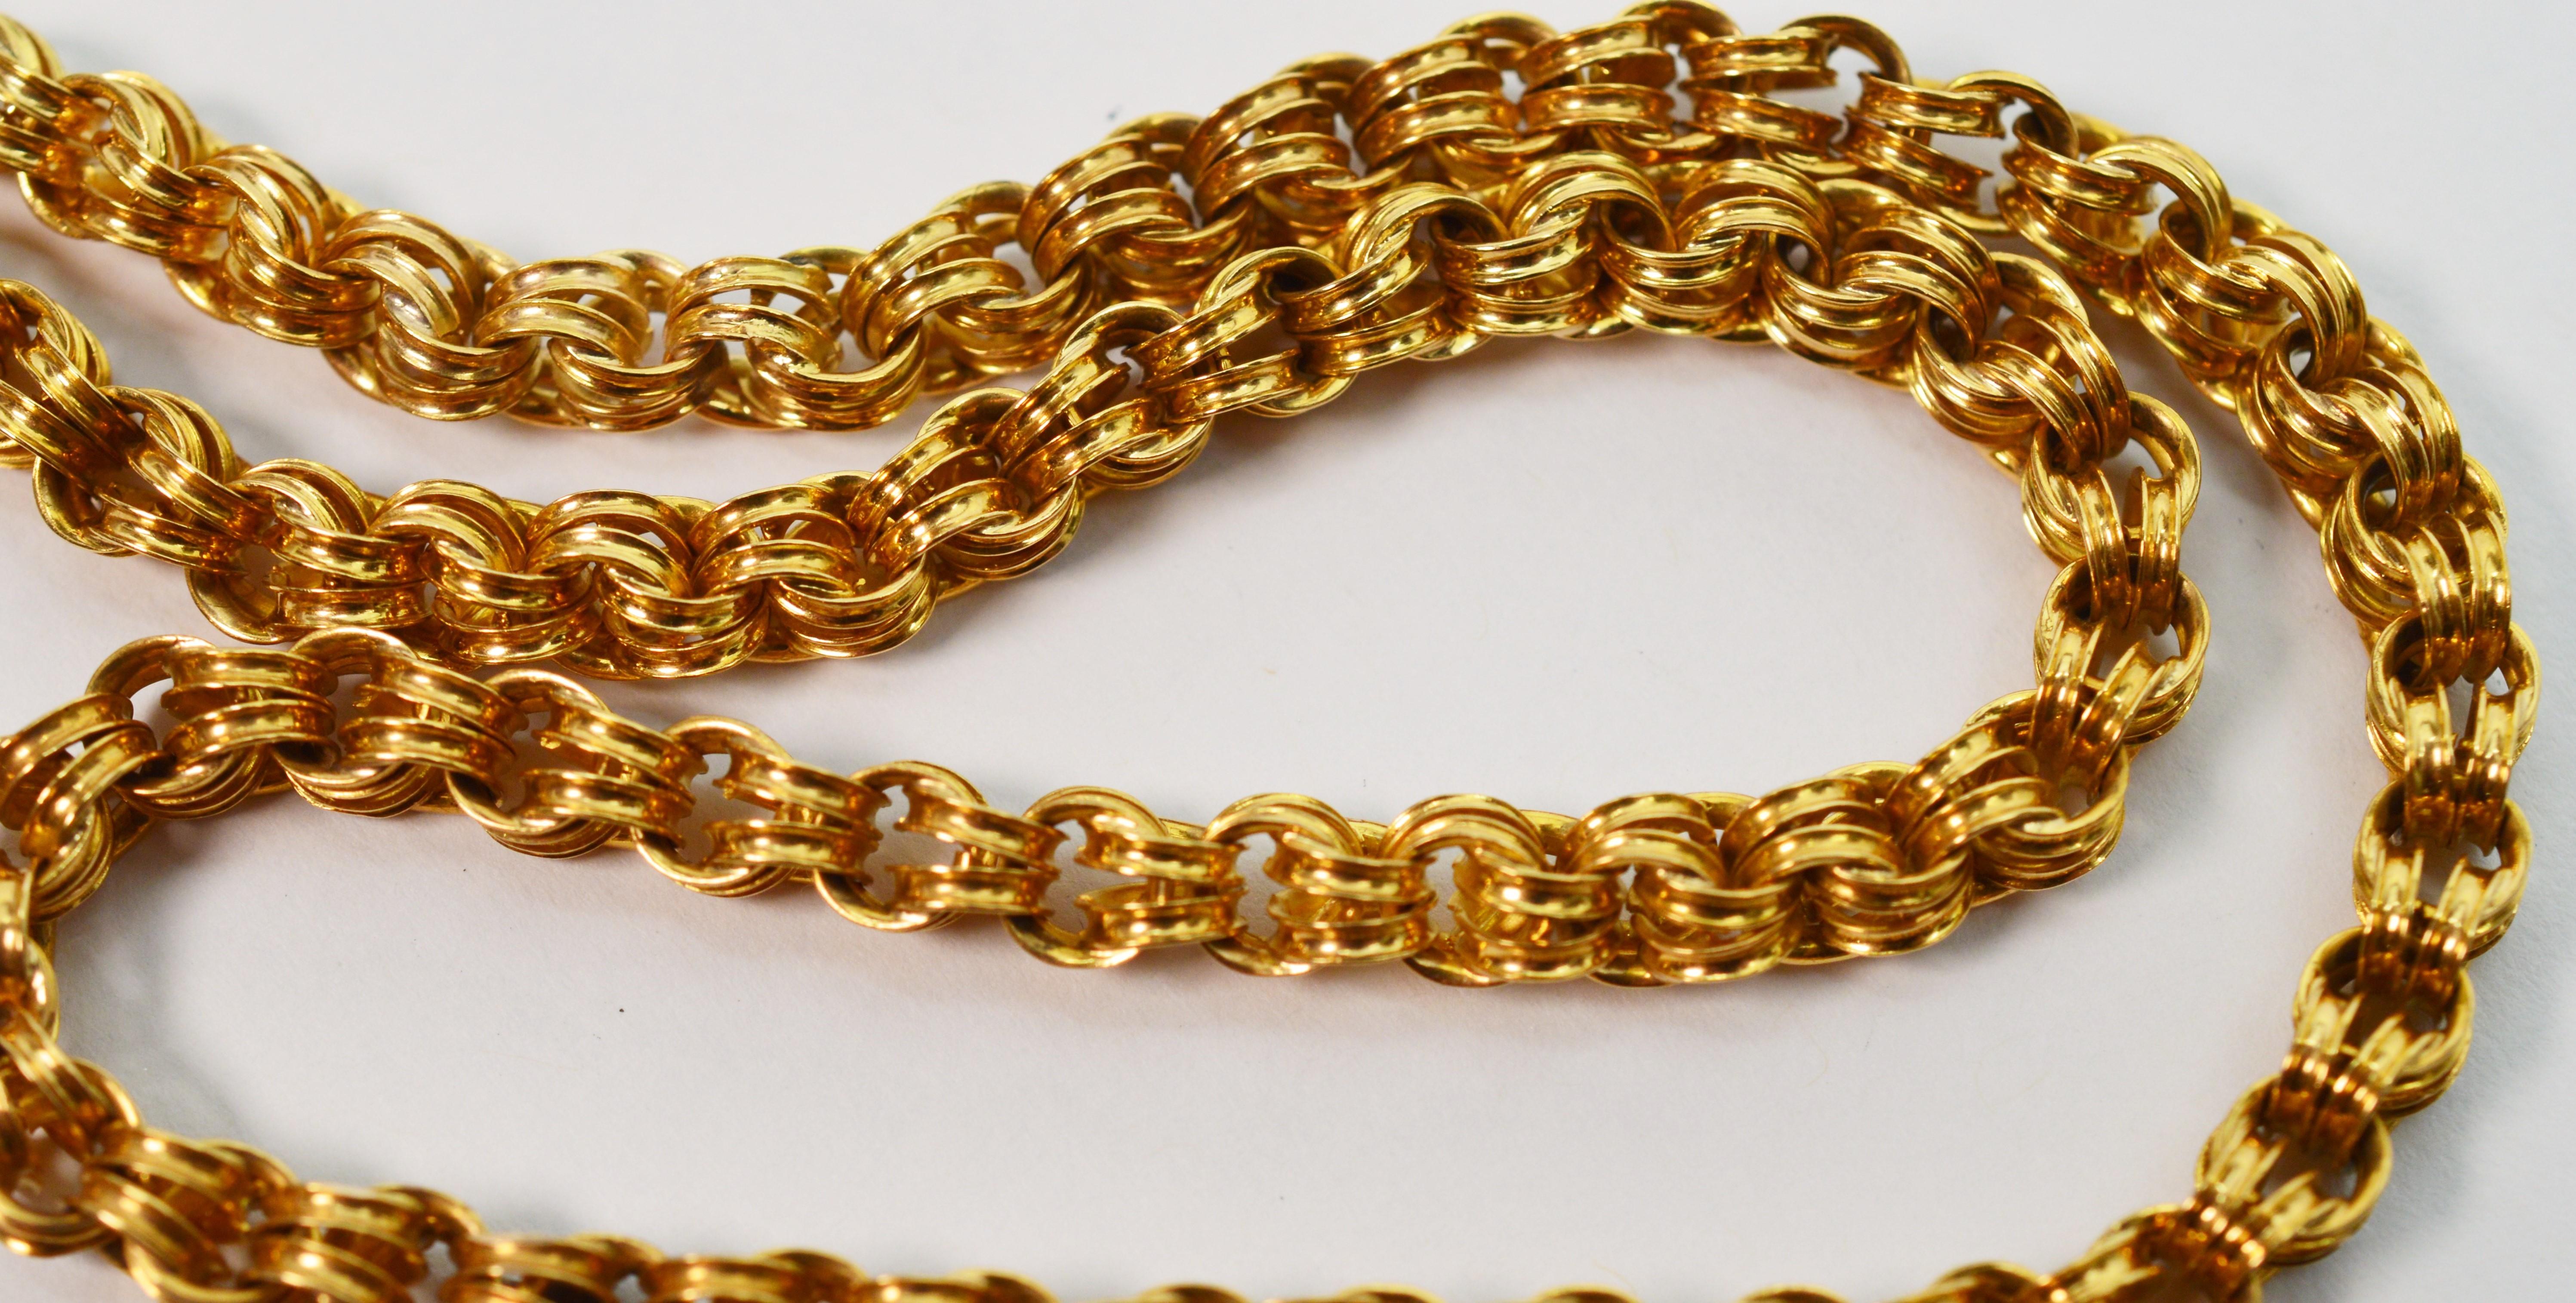 18k gold pocket watch chain